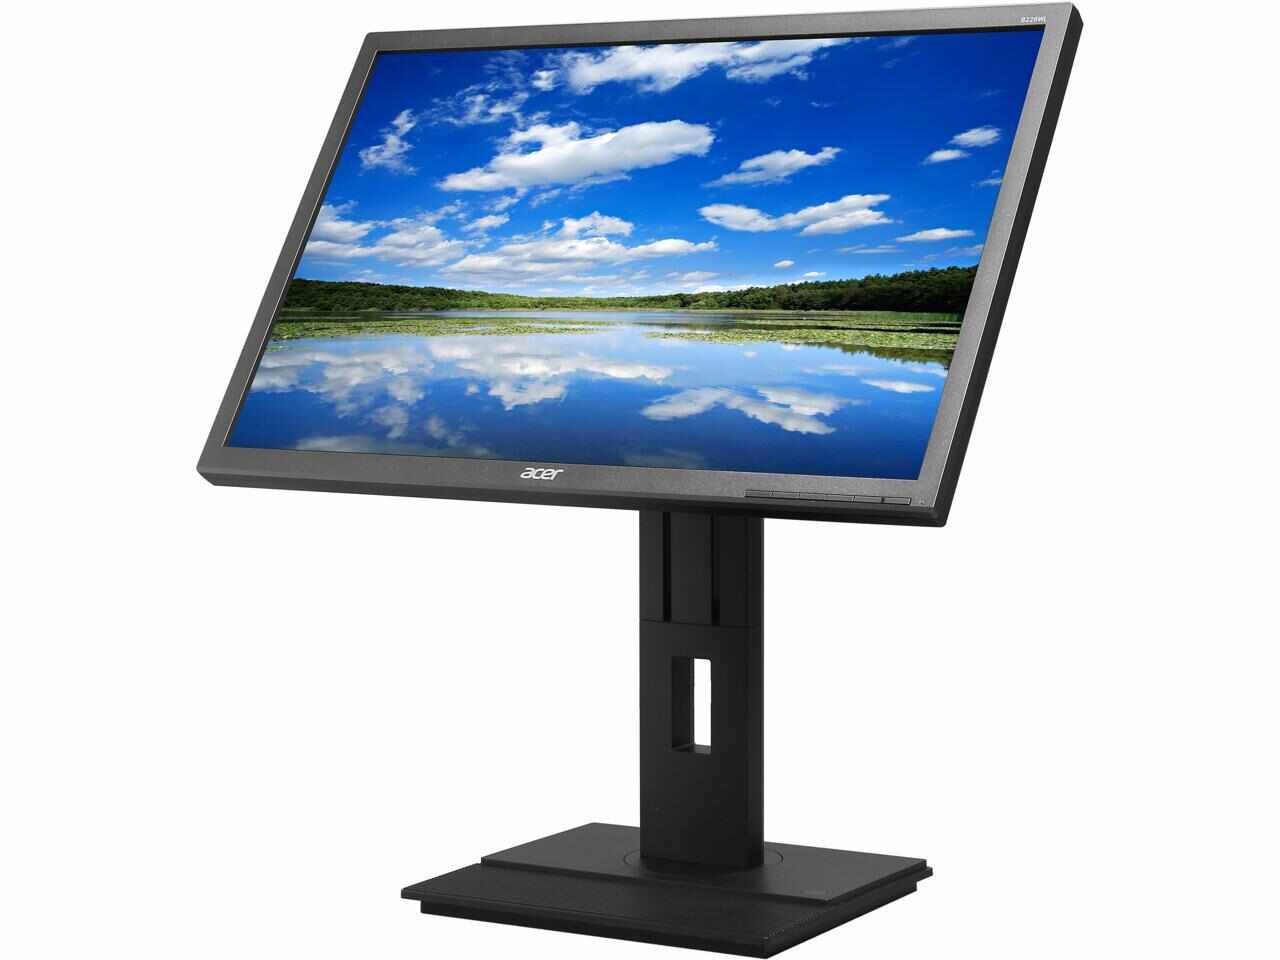 Monitor Refurbished Acer B226WL, 22 Inch LCD TN, 1680 x 1050, VGA, DVI